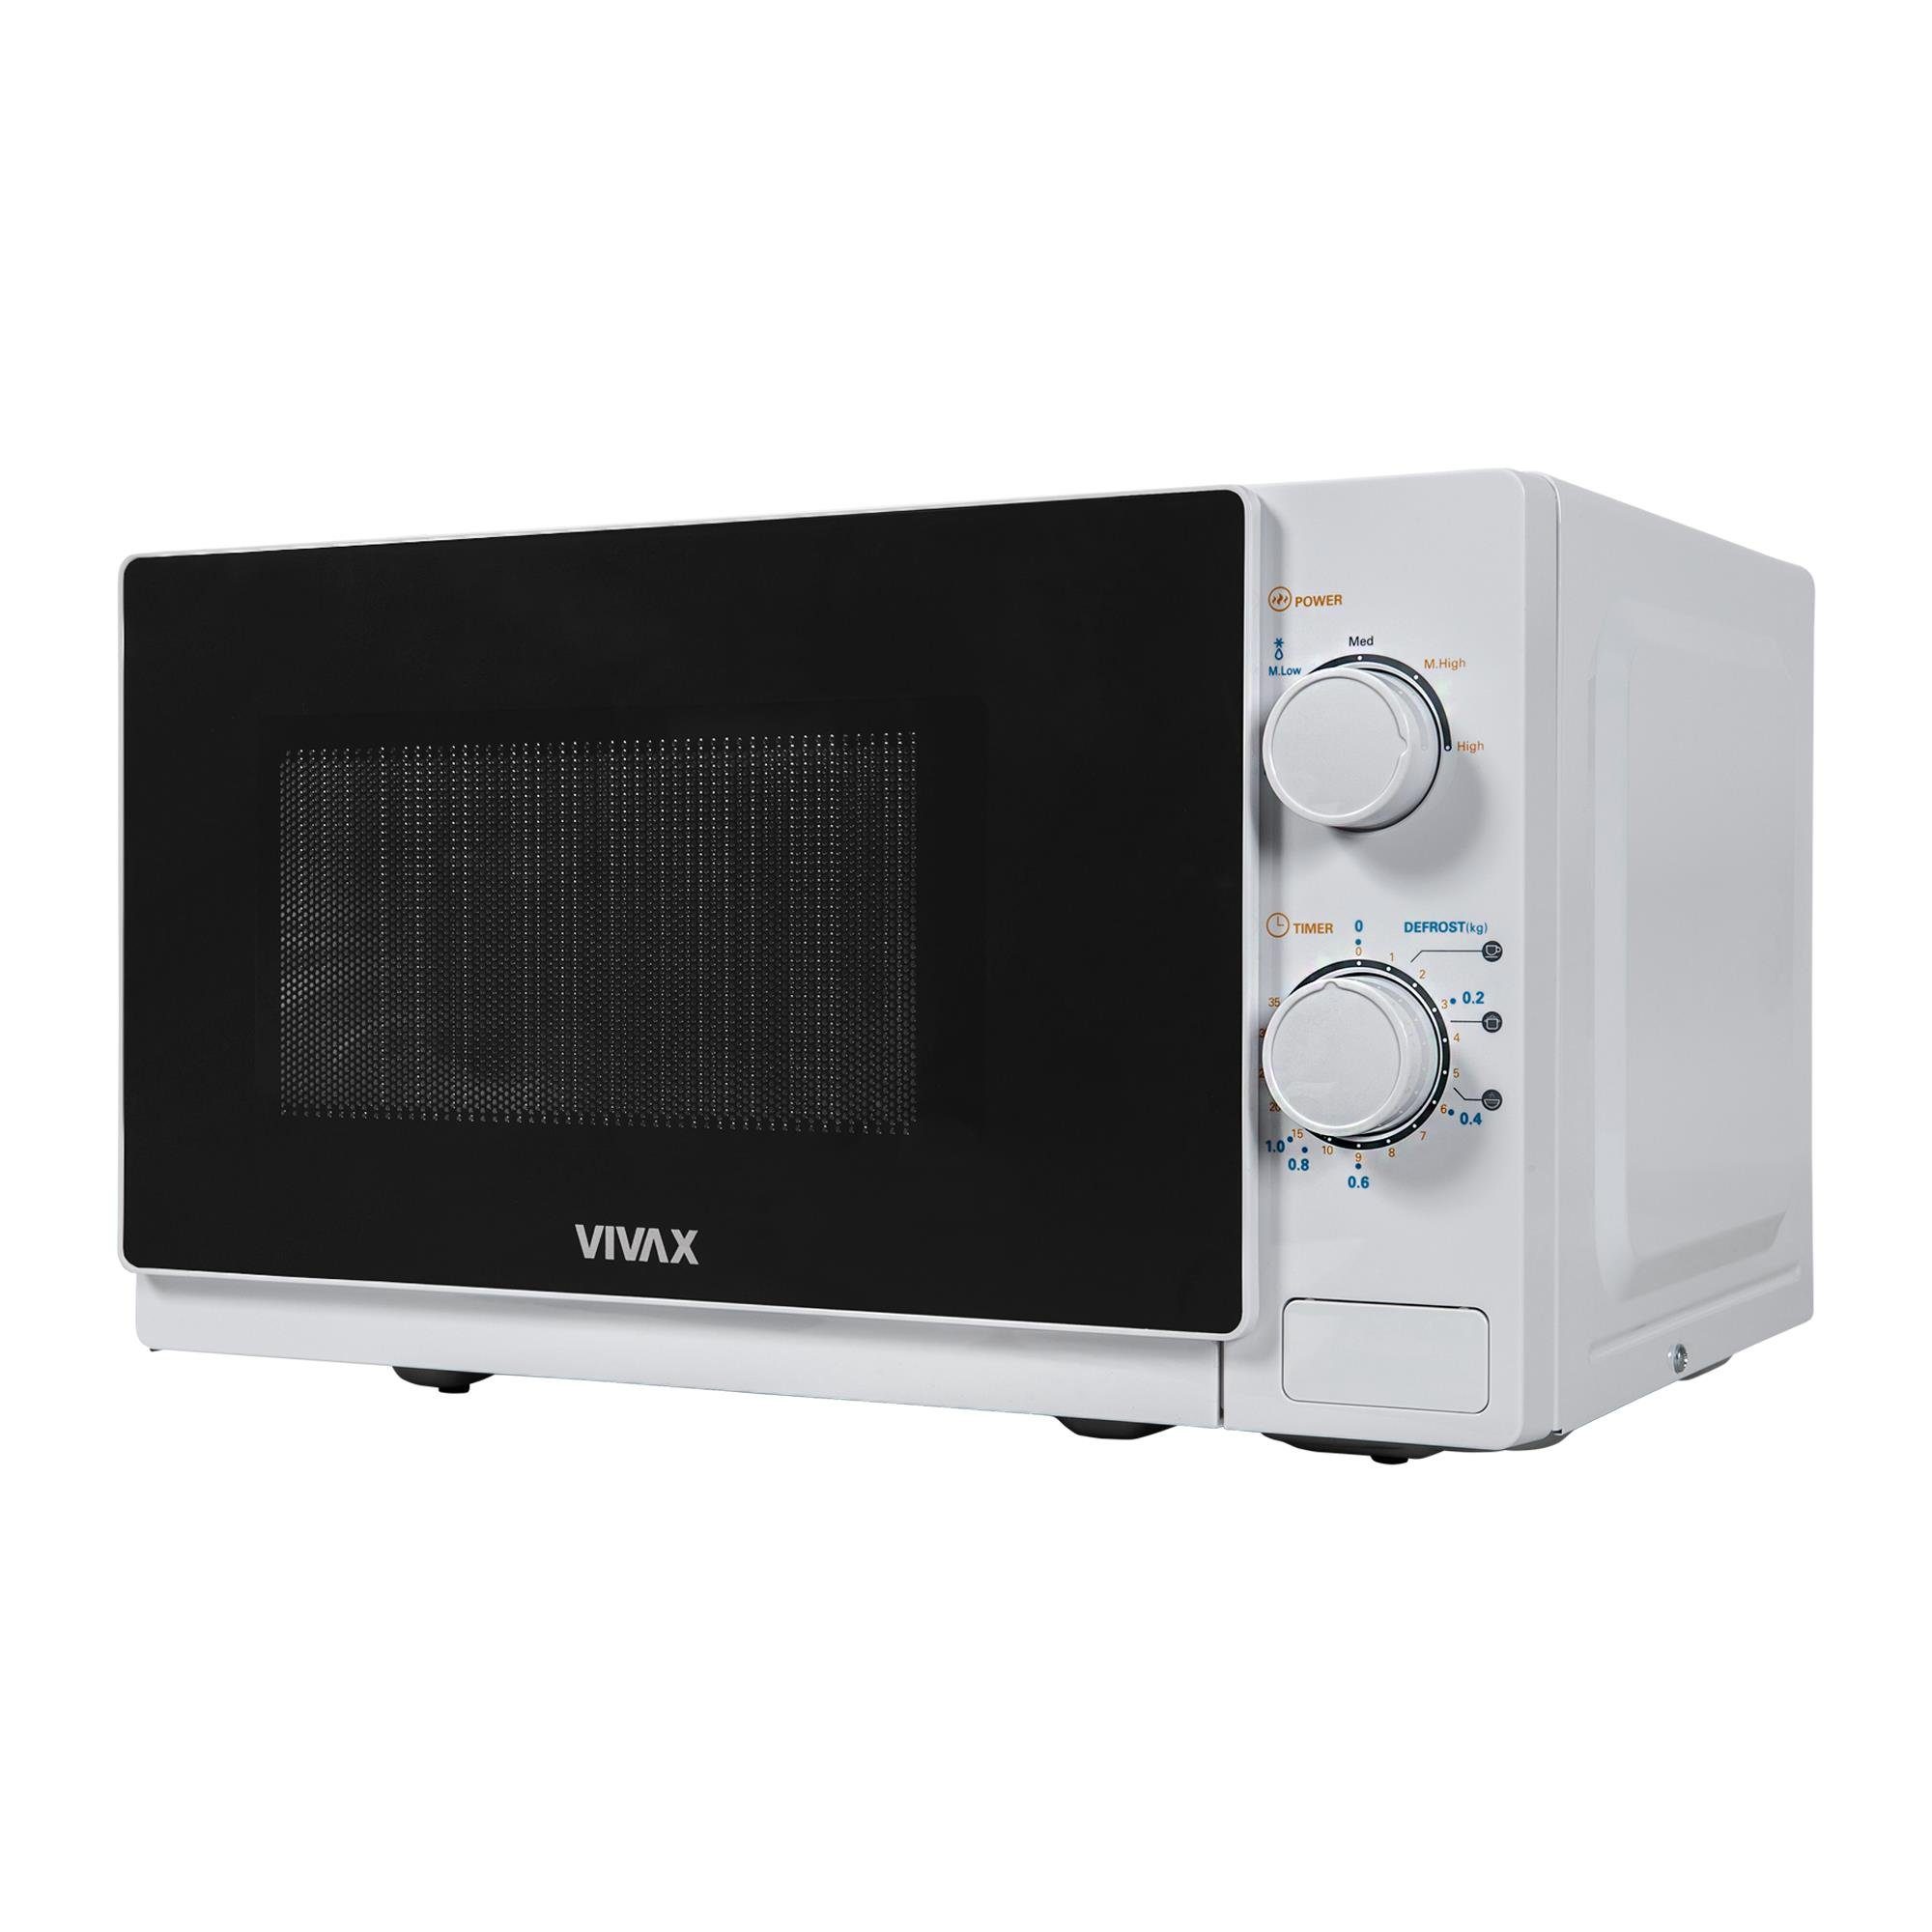 Vivax Mikrowelle 20l, 700W in weiß, MWO-2077, Mikrowelle, 20 l